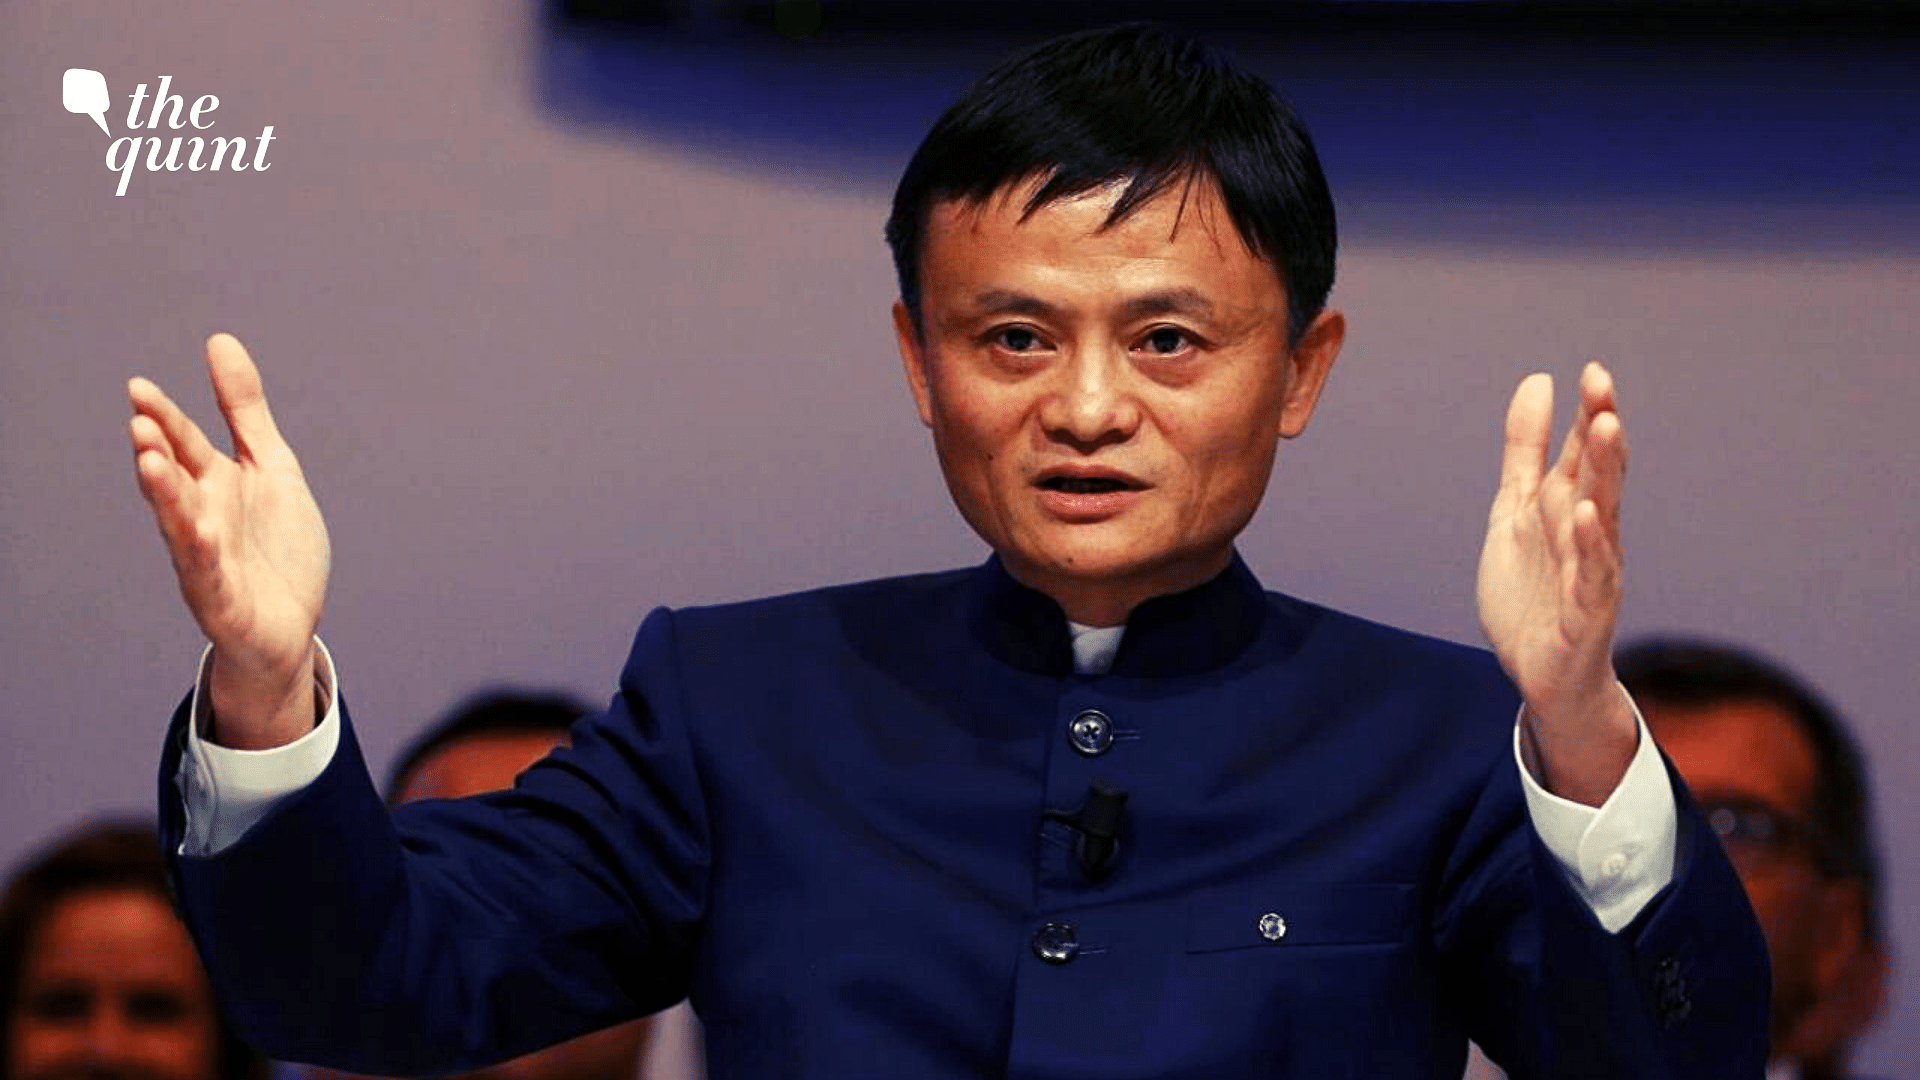 <div class="paragraphs"><p>Alibaba co-founder Jack Ma.</p></div>